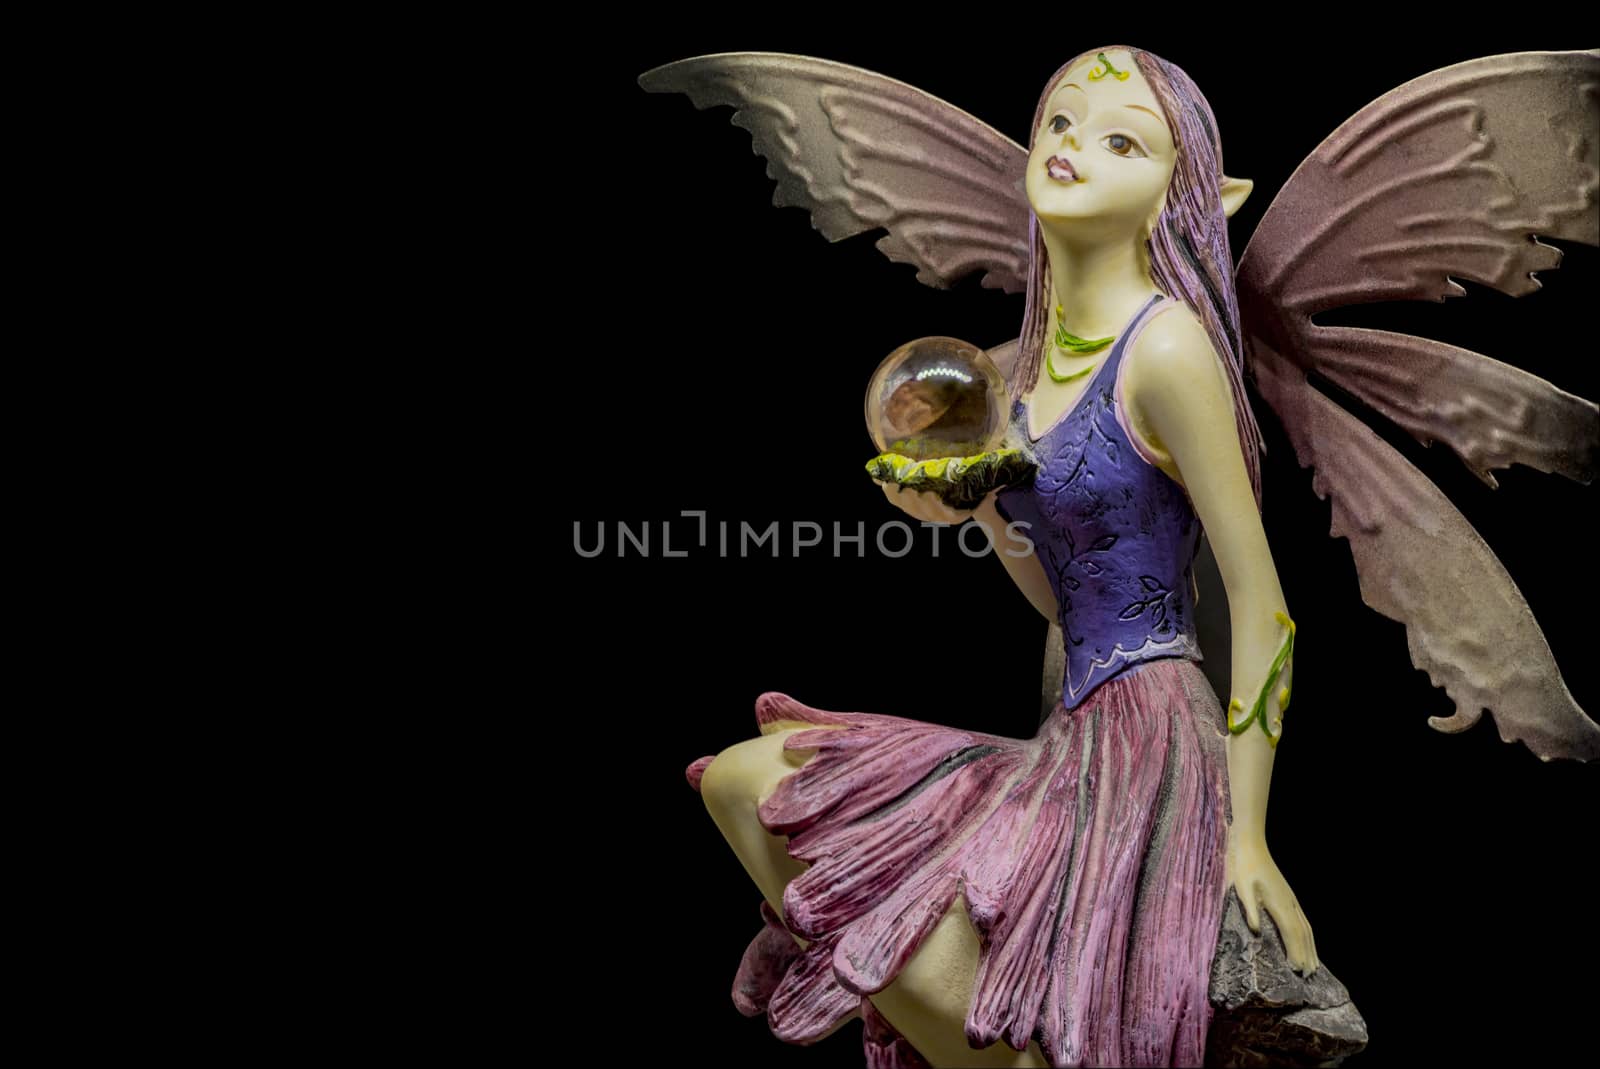 female elf figurine by vangelis